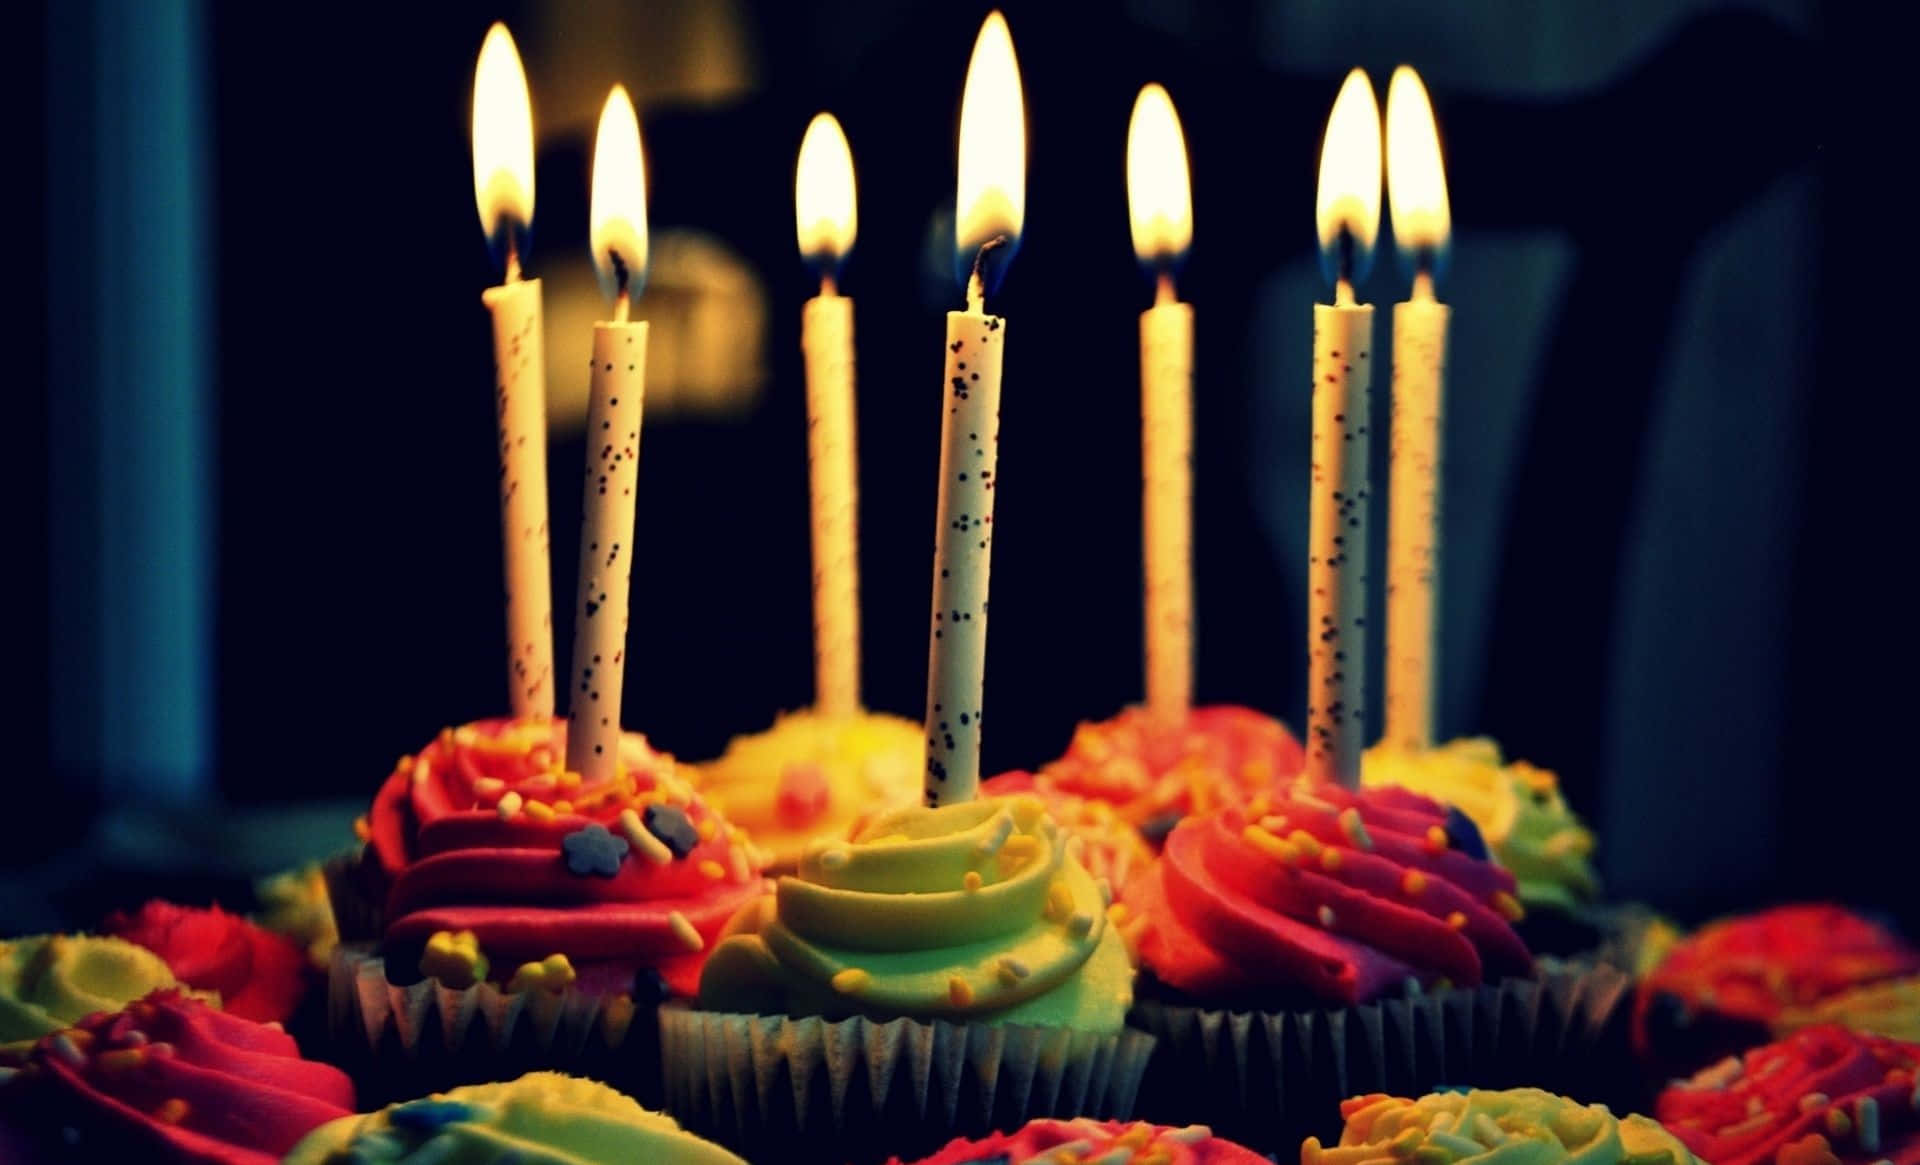 Cupcakesde Aniversário Em Um Fundo De Área Escura.